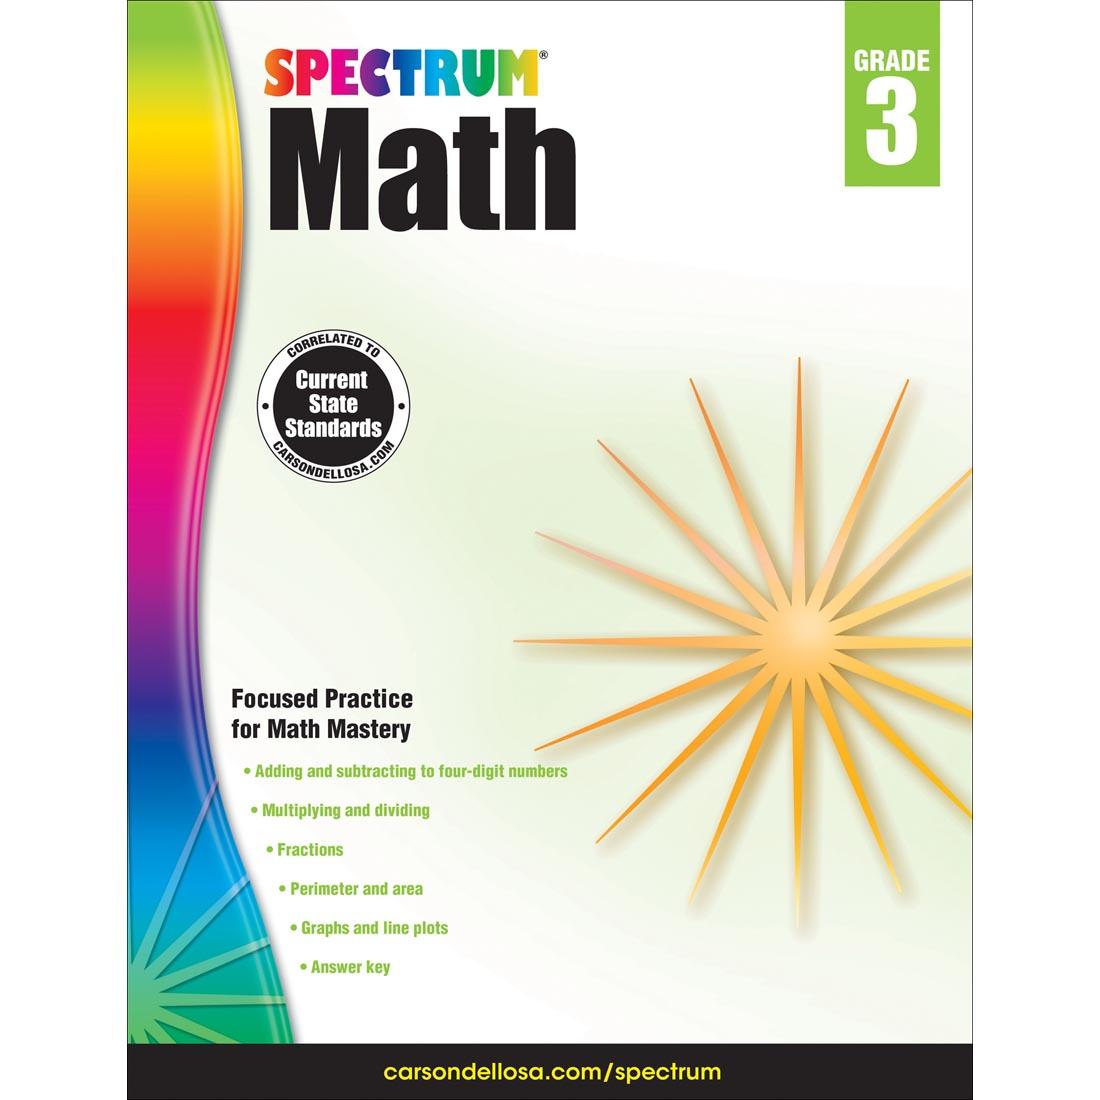 Spectrum Math Book by Carson Dellosa Grade 3